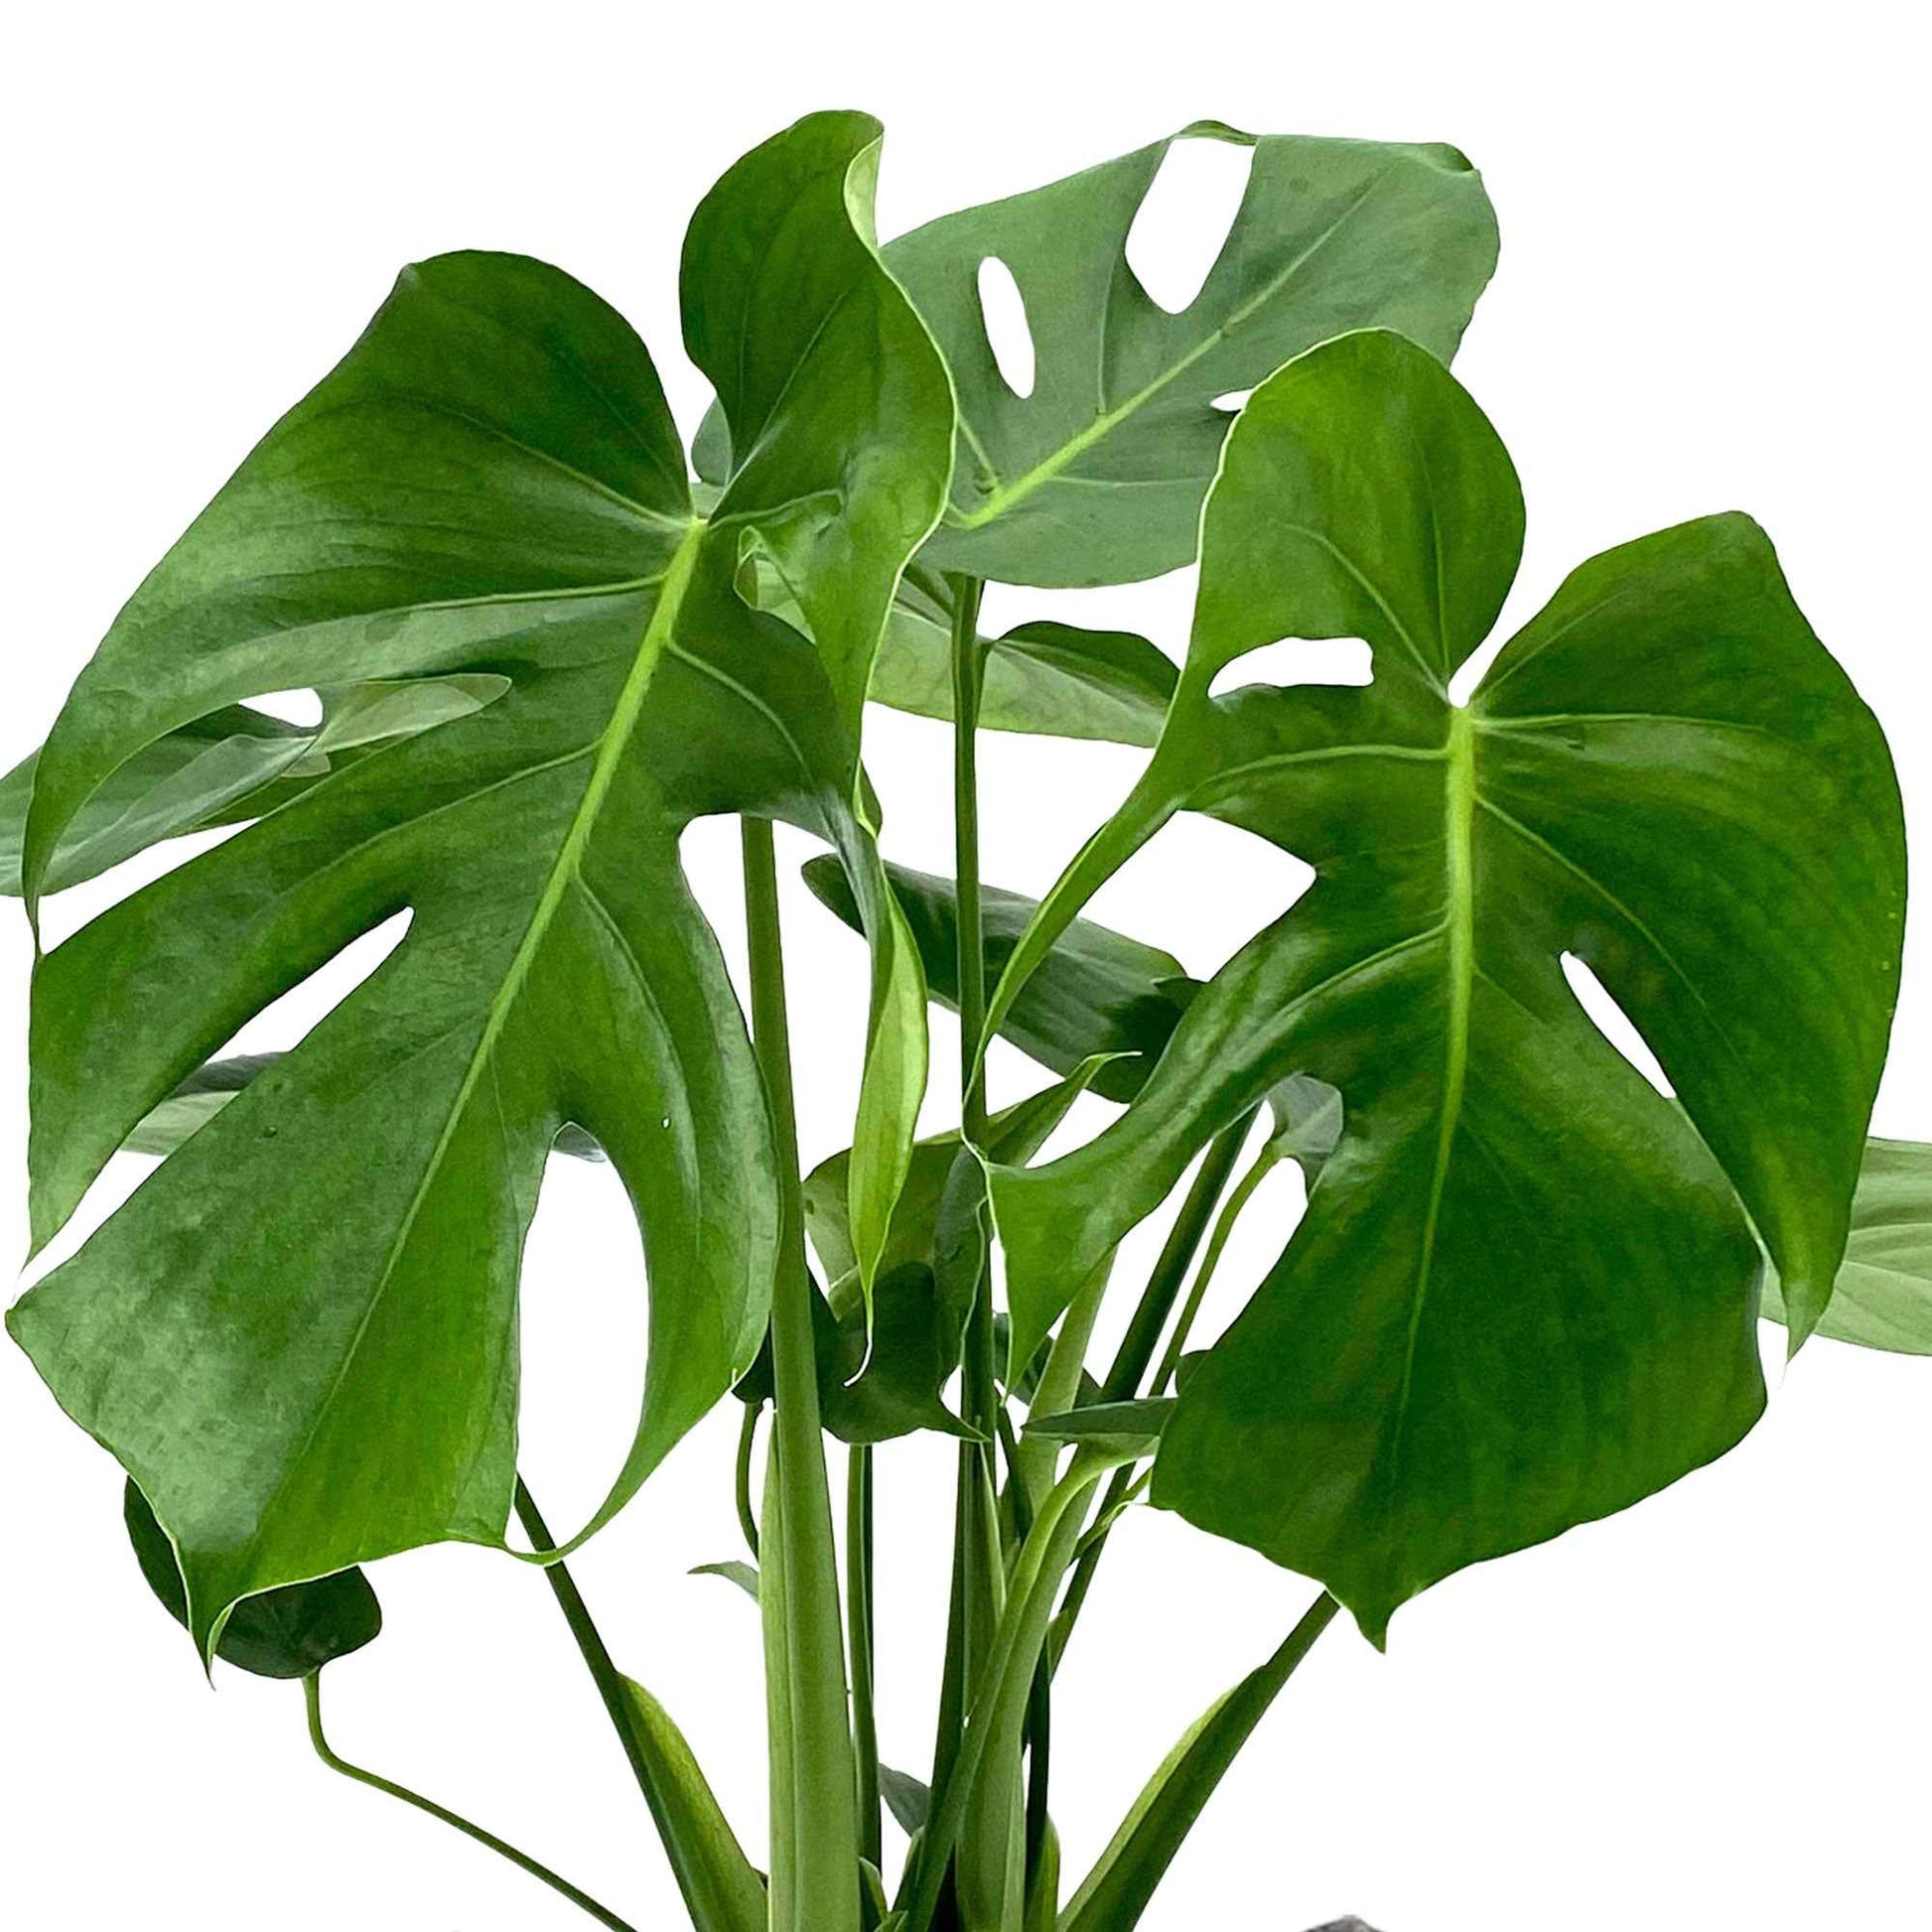 Lochpflanze Monstera deliciosa inkl. Weidenkorb, grau - Beliebte Zimmerpflanzen